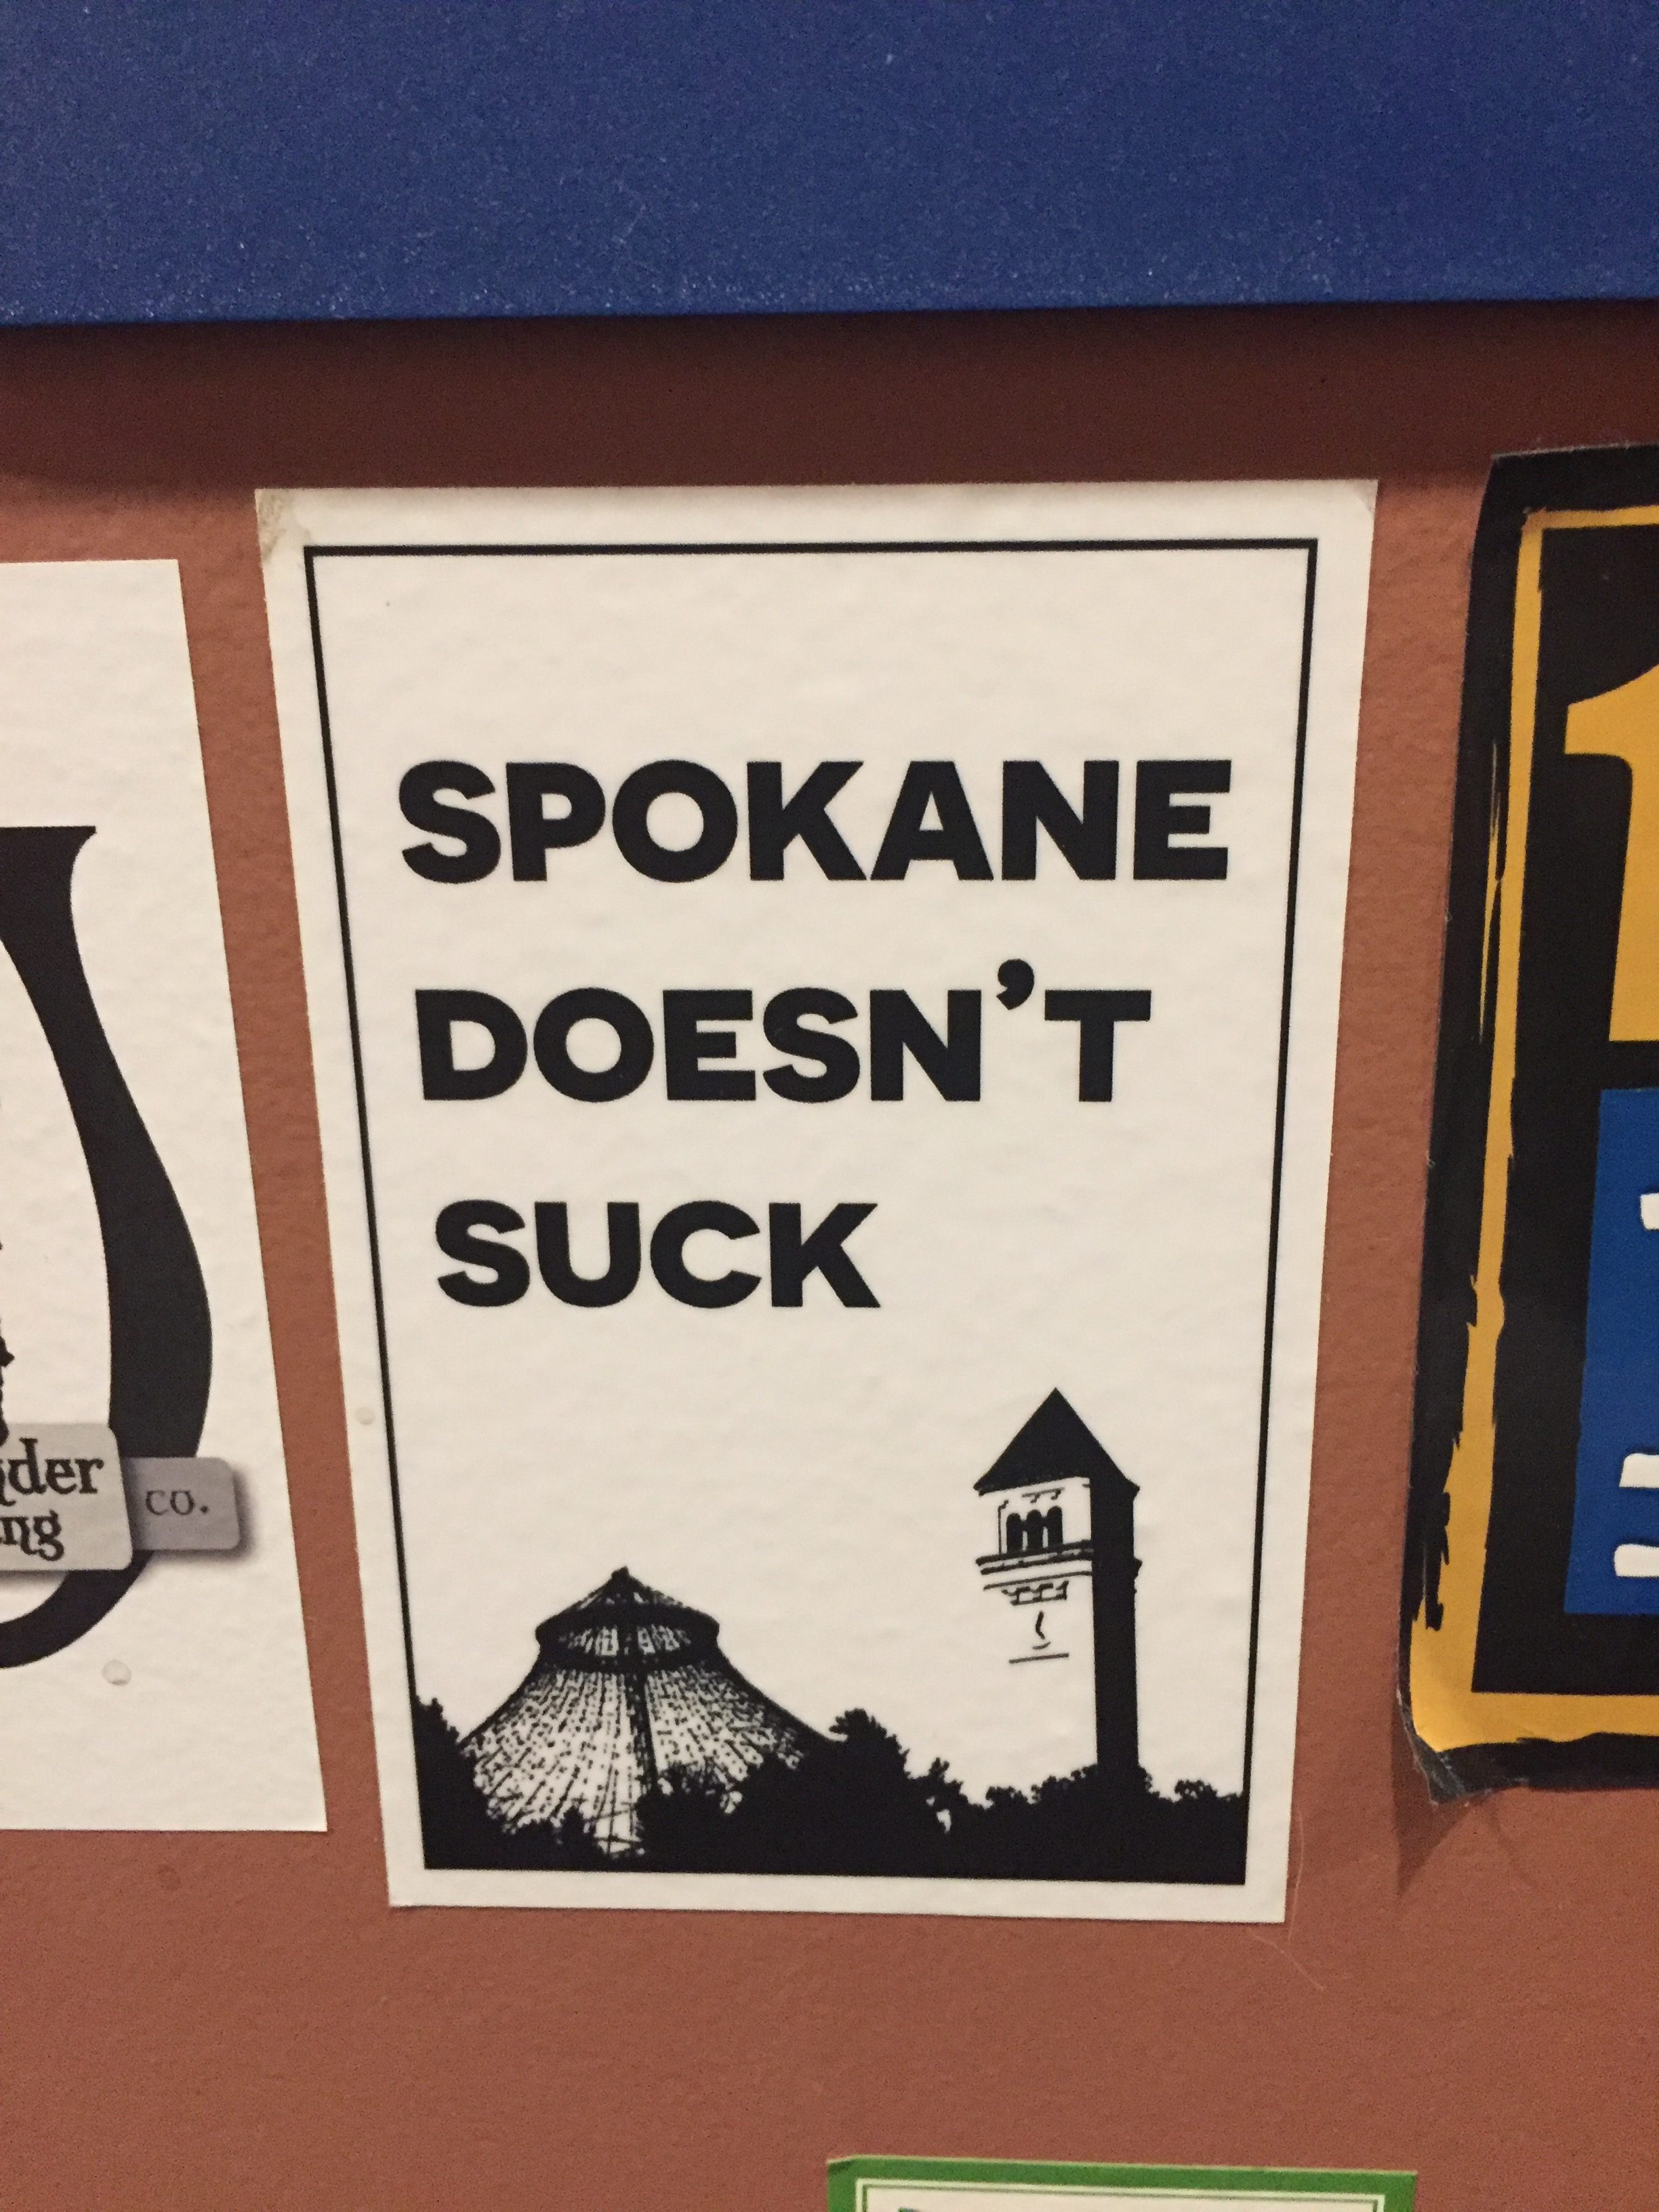 About spokane doesn't suck